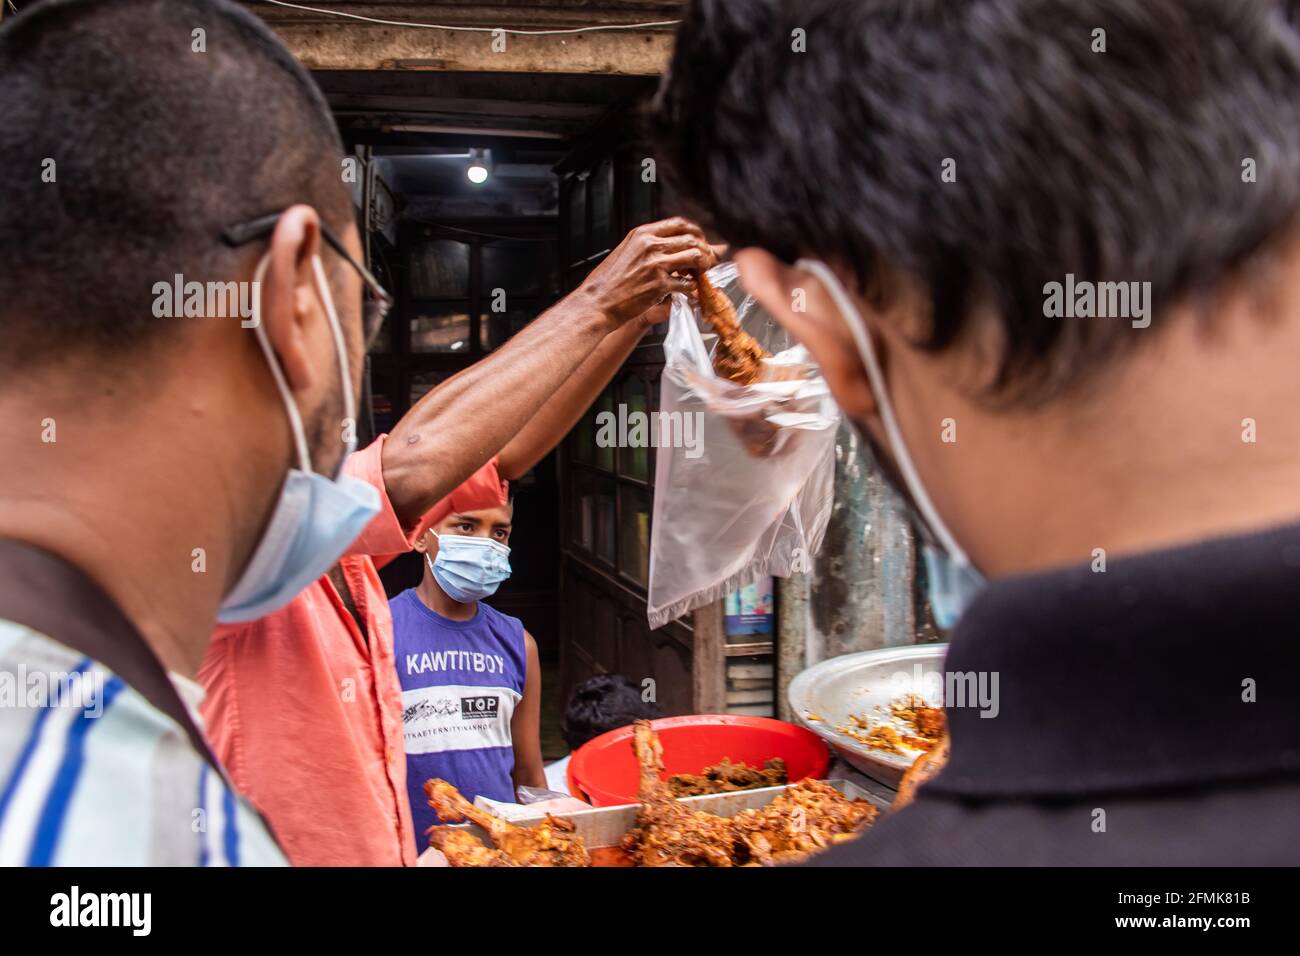 Traditionelle Verkaufsbewegung auf der Straße im Monat Ramadan 2021 habe ich dieses Bild von Chak Bazar, Dhaka, Bangladesch, Asien aufgenommen Stockfoto